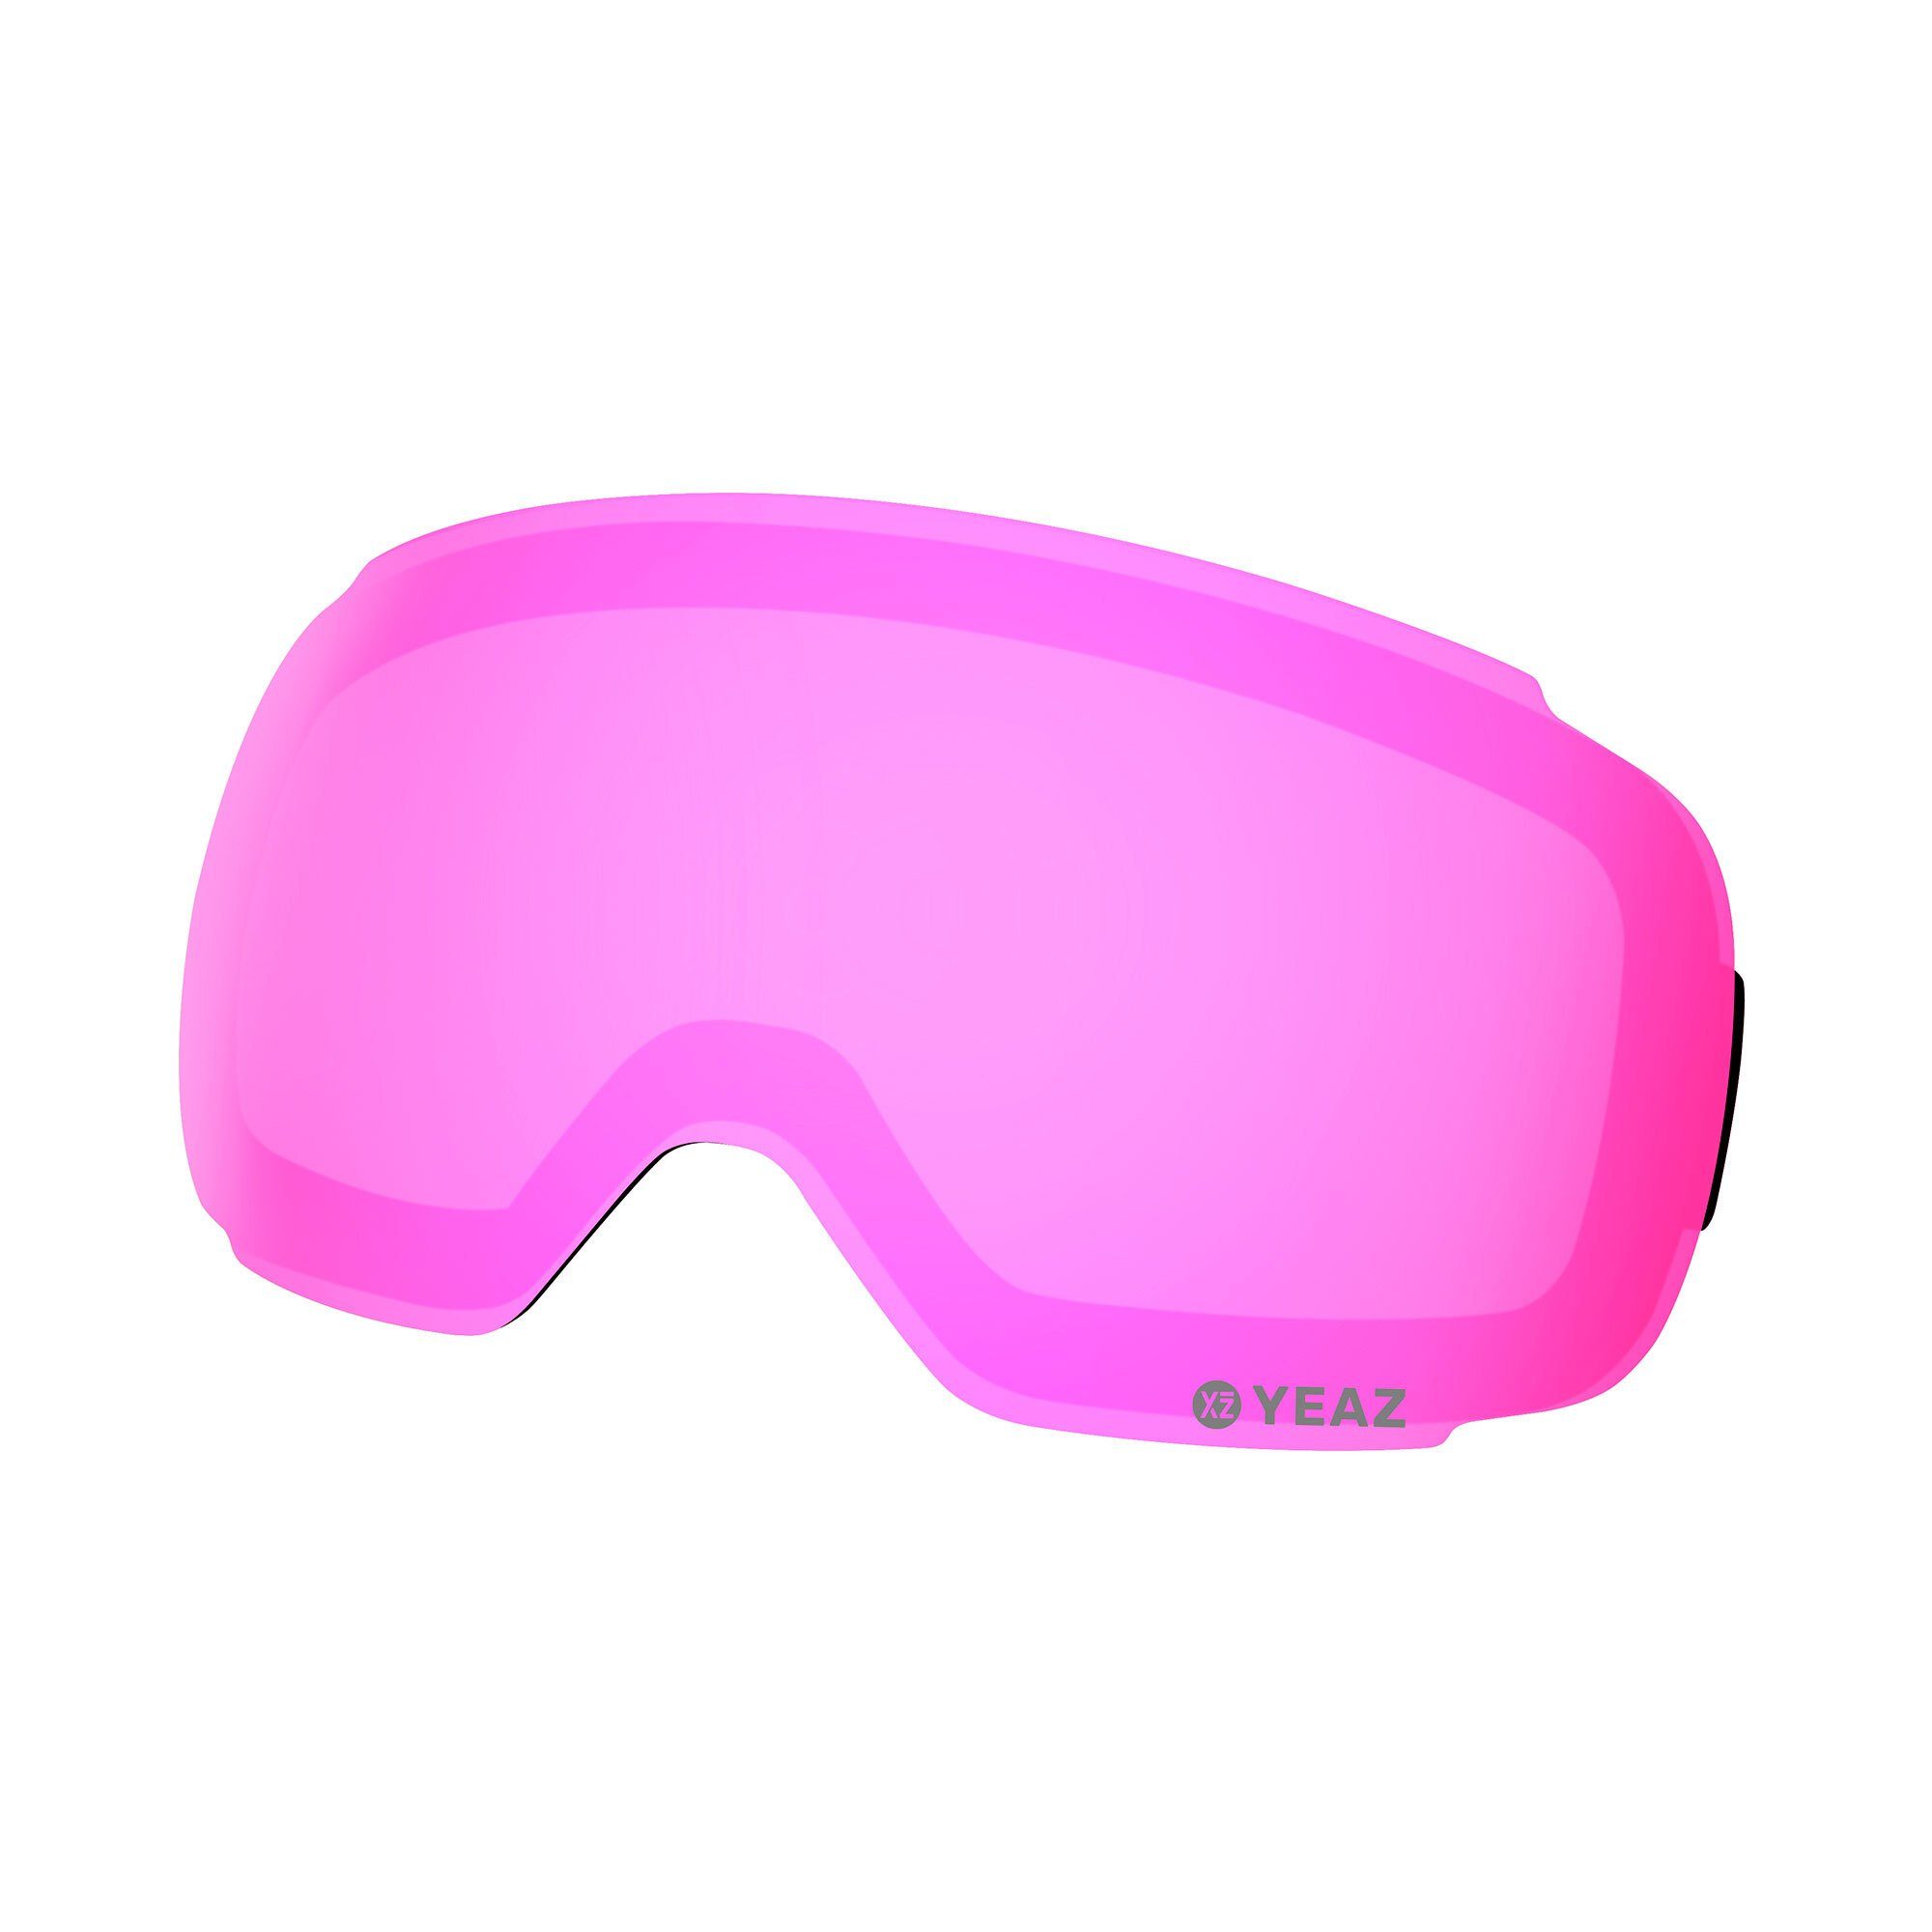 Skibrille YEAZ verspiegelt pink snowboardbrille, für Wechselglas TWEAK-X wechselglas Magnetisches ski-